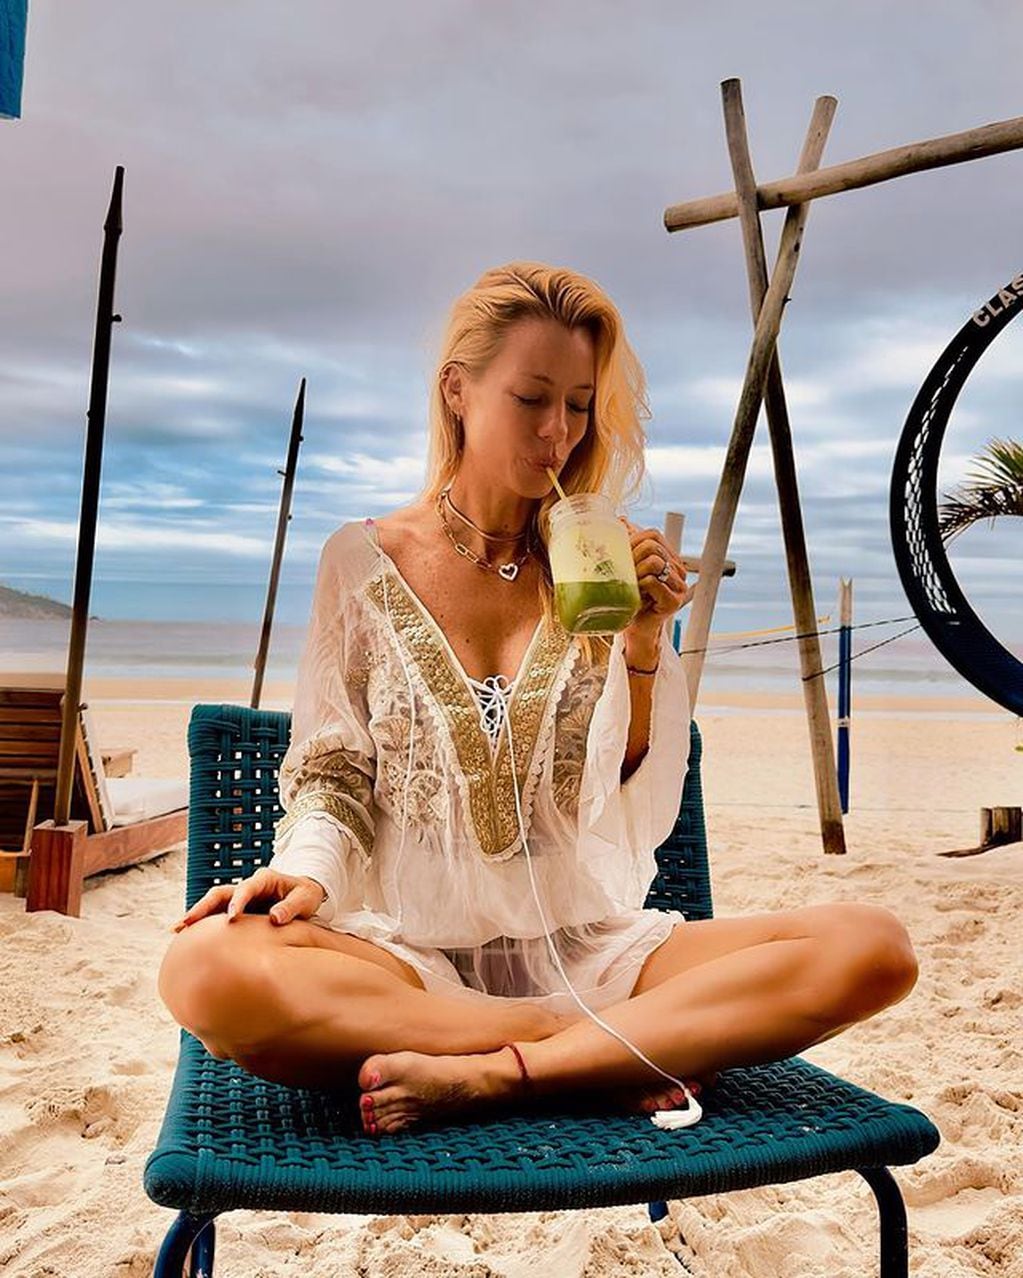 La modelo deslumbró con un outfit super veraniego desde una paradisíaca playa en Brasil / Foto: Instagram